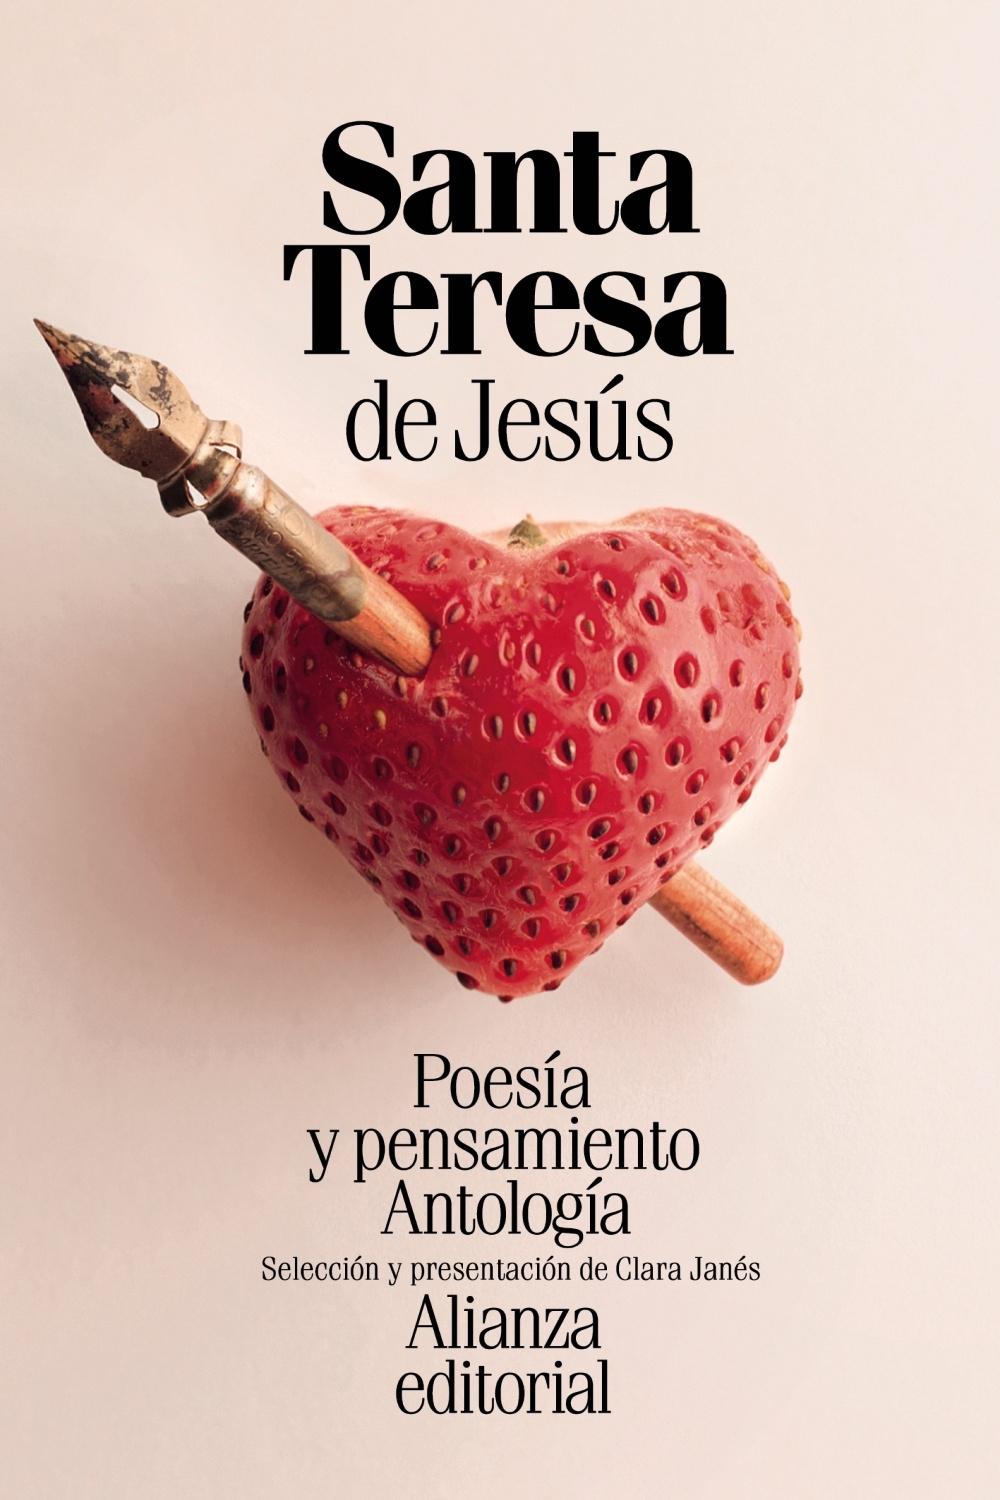 POESÍA Y PENSAMIENTO DE SANTA TERESA DE JESÚS "ANTOLOGÍA". 